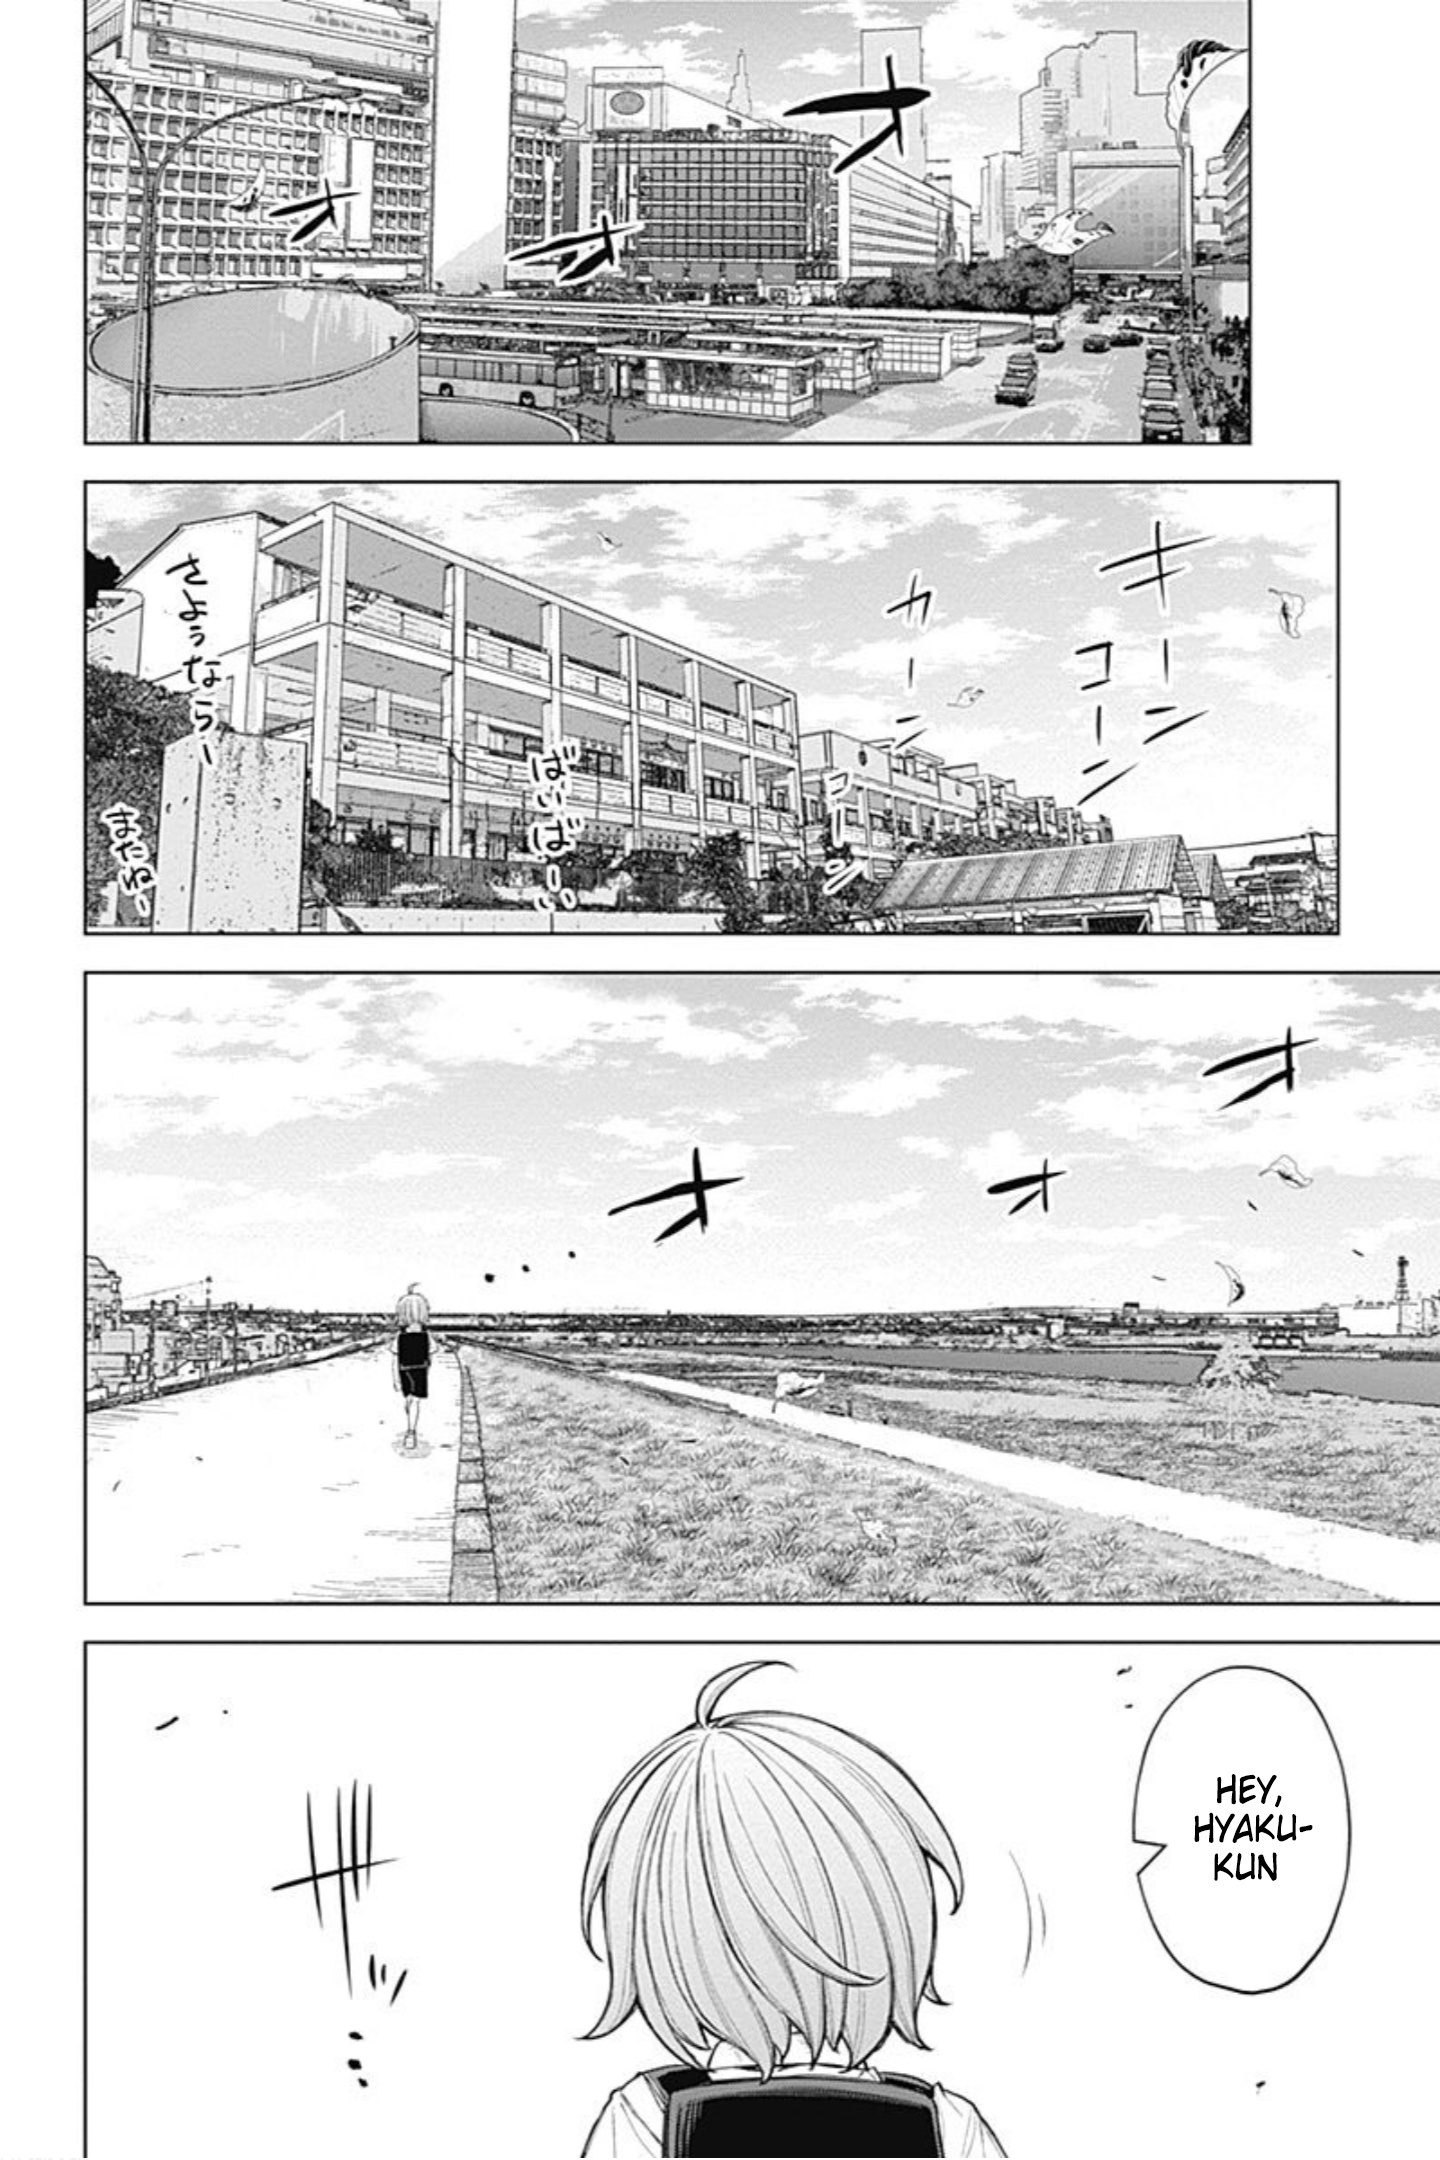 Kunoichi No Ichi! No Ni Vol.5 Chapter 48: Kunoichi And Ichi - Picture 2